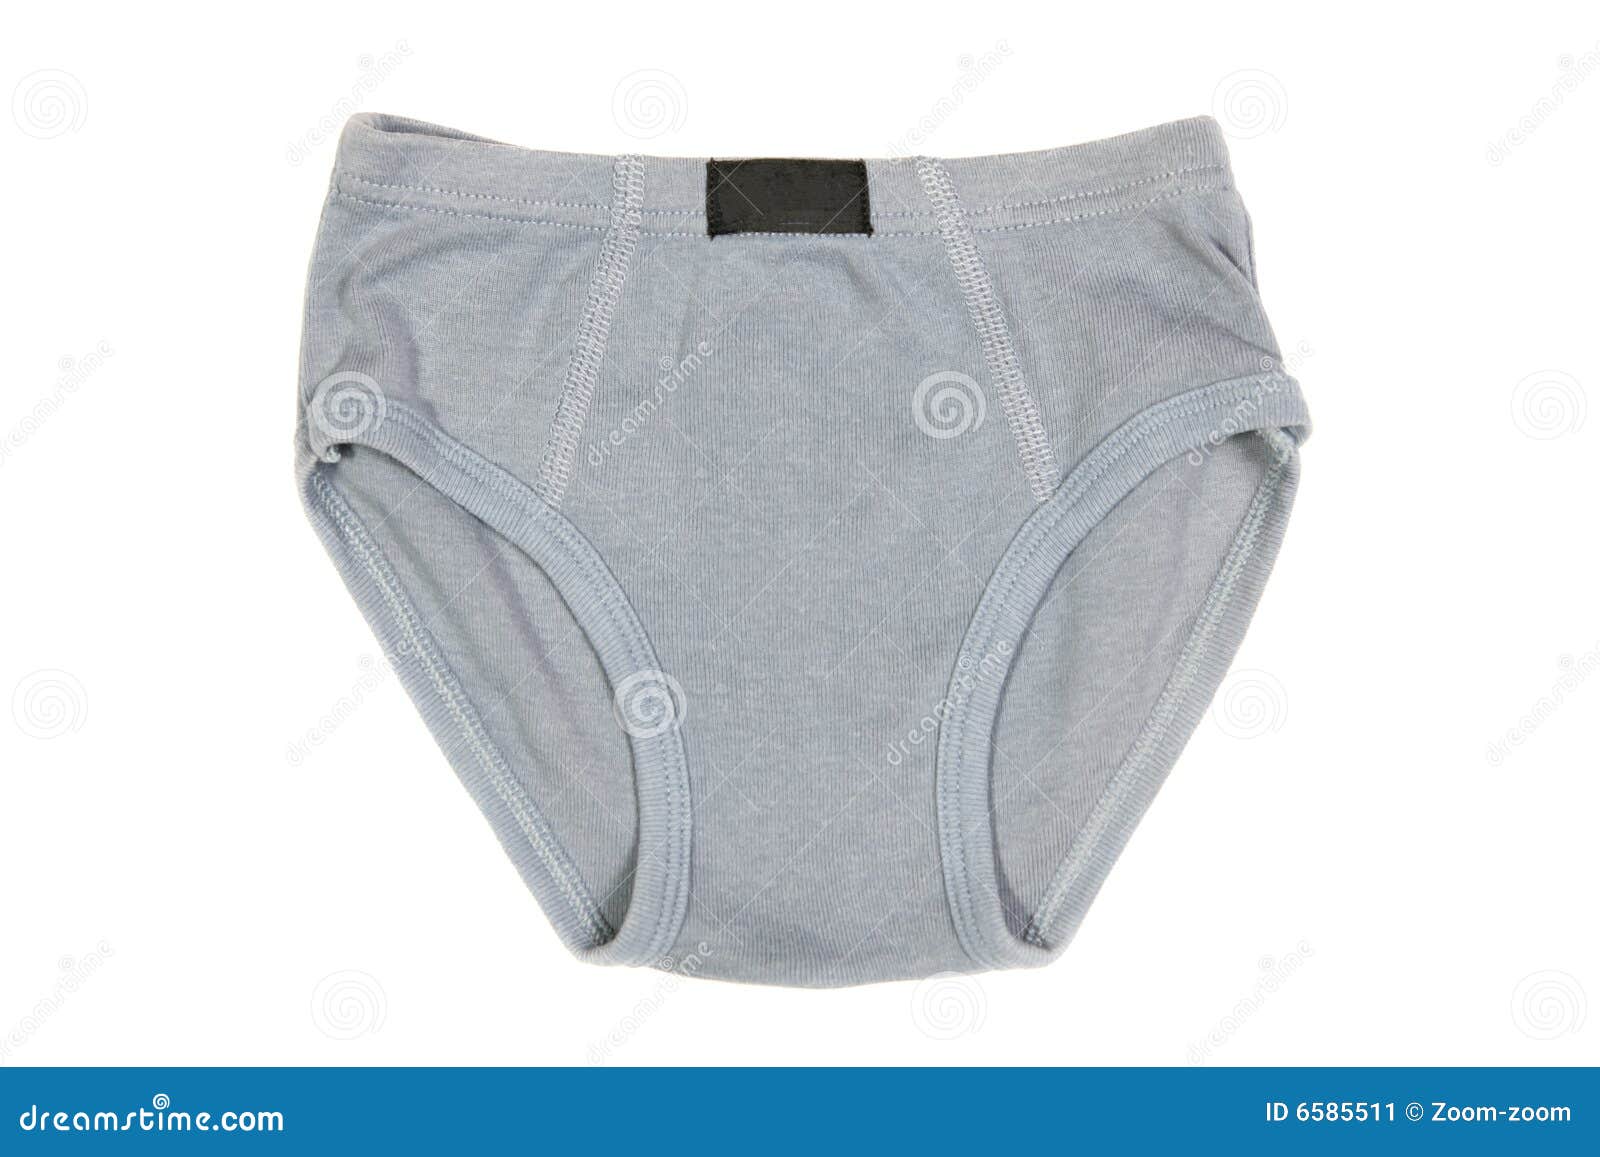 Boys pants stock image. Image of stylish, isolated, textile - 6585511